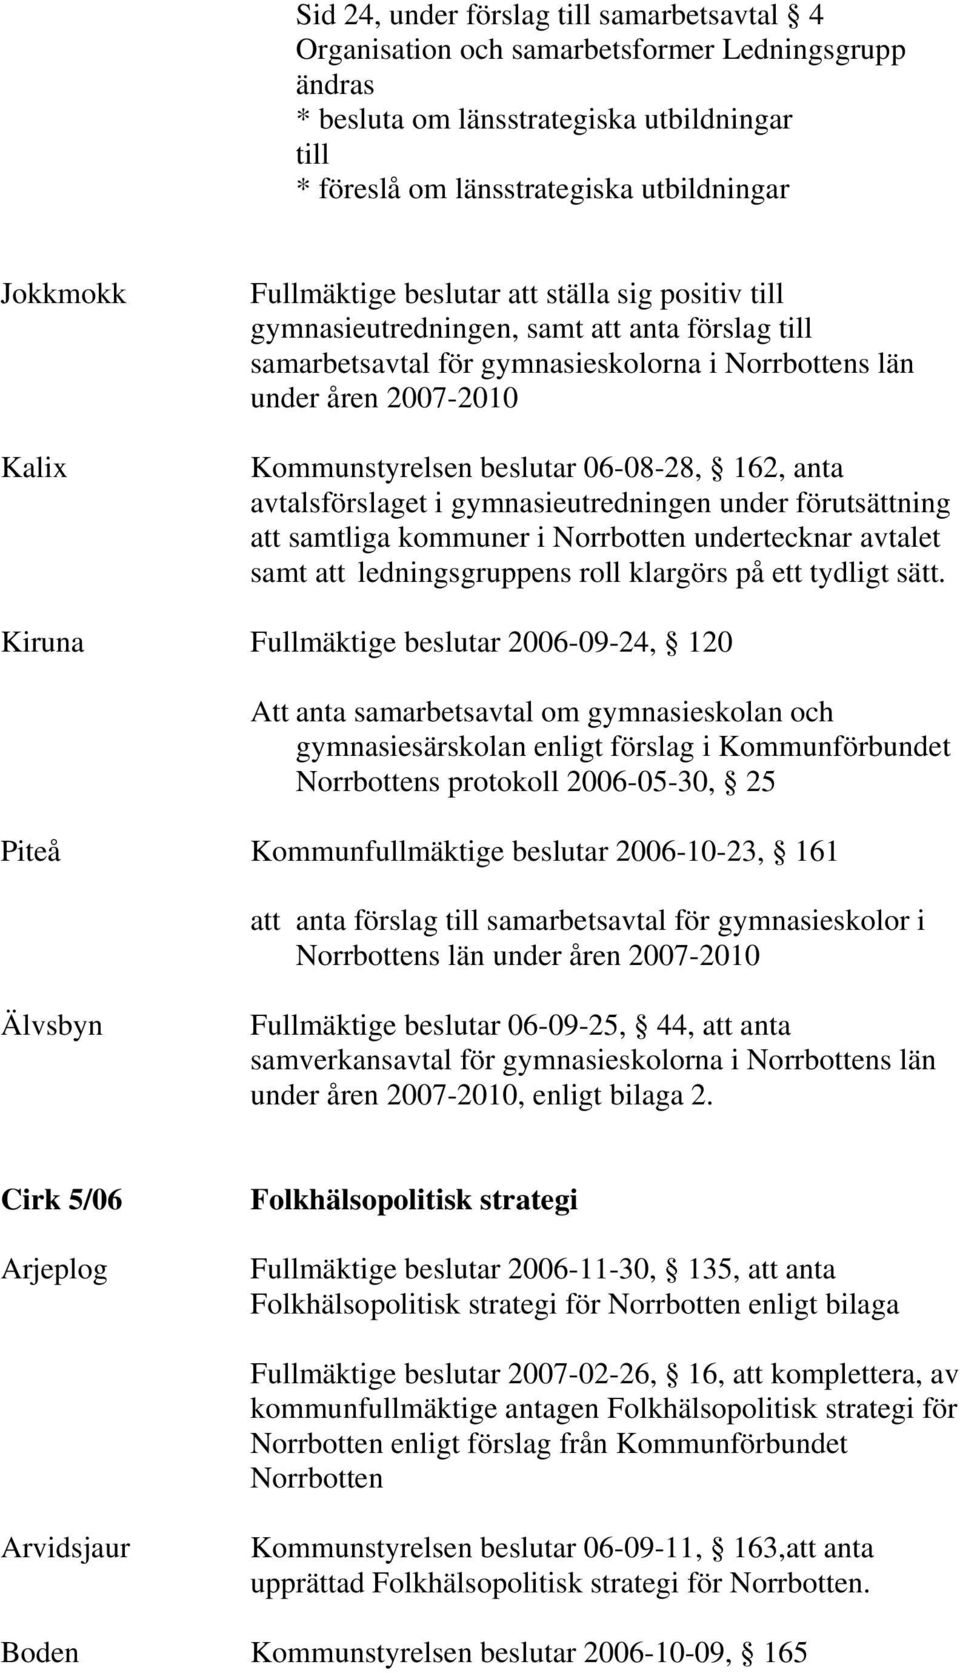 beslutar 06-08-28, 162, anta avtalsförslaget i gymnasieutredningen under förutsättning att samtliga kommuner i Norrbotten undertecknar avtalet samt att ledningsgruppens roll klargörs på ett tydligt